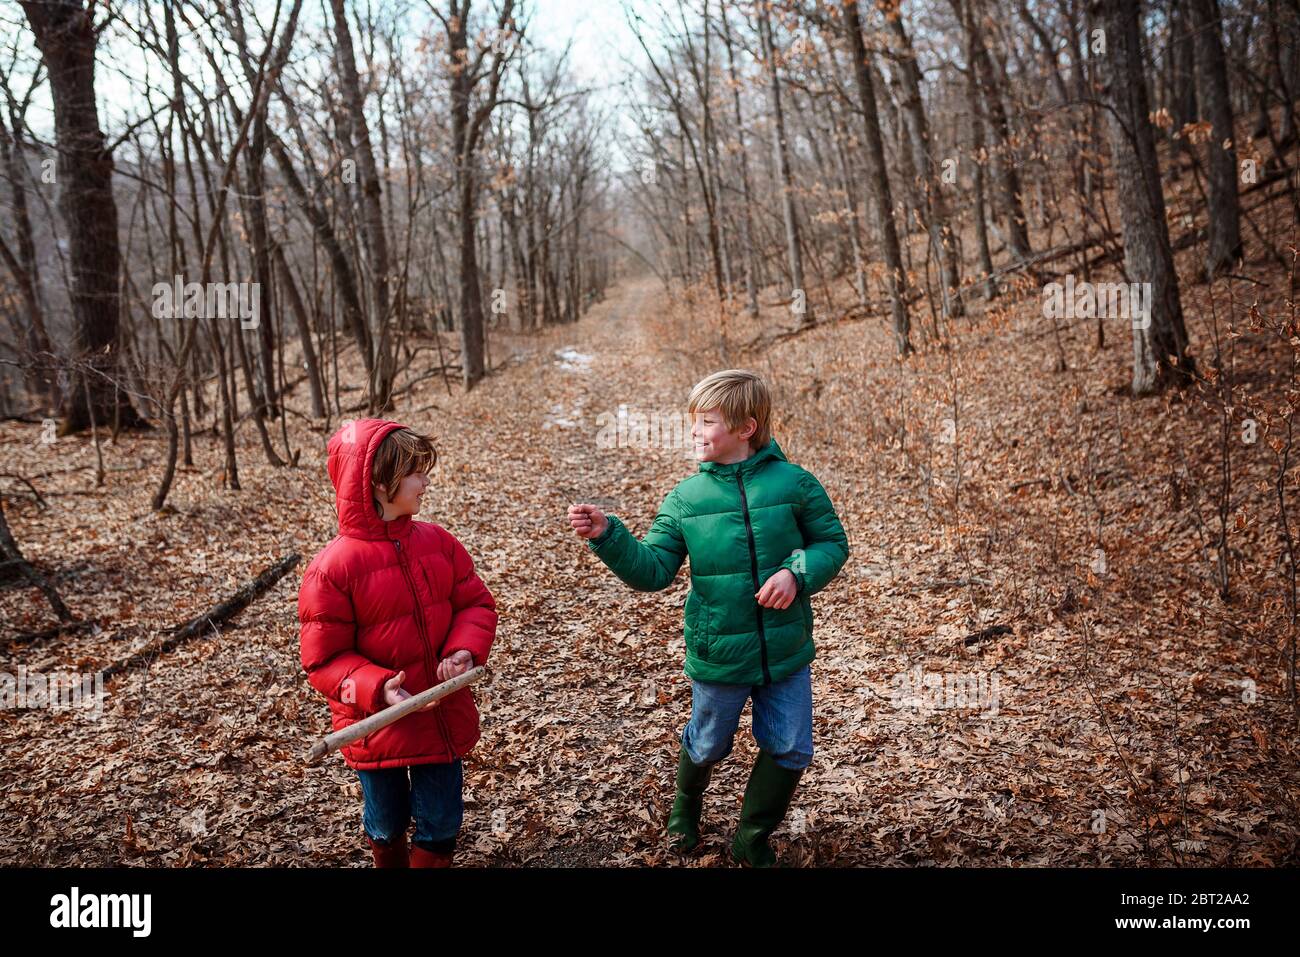 Two boys walking through an autumn forest, USA Stock Photo